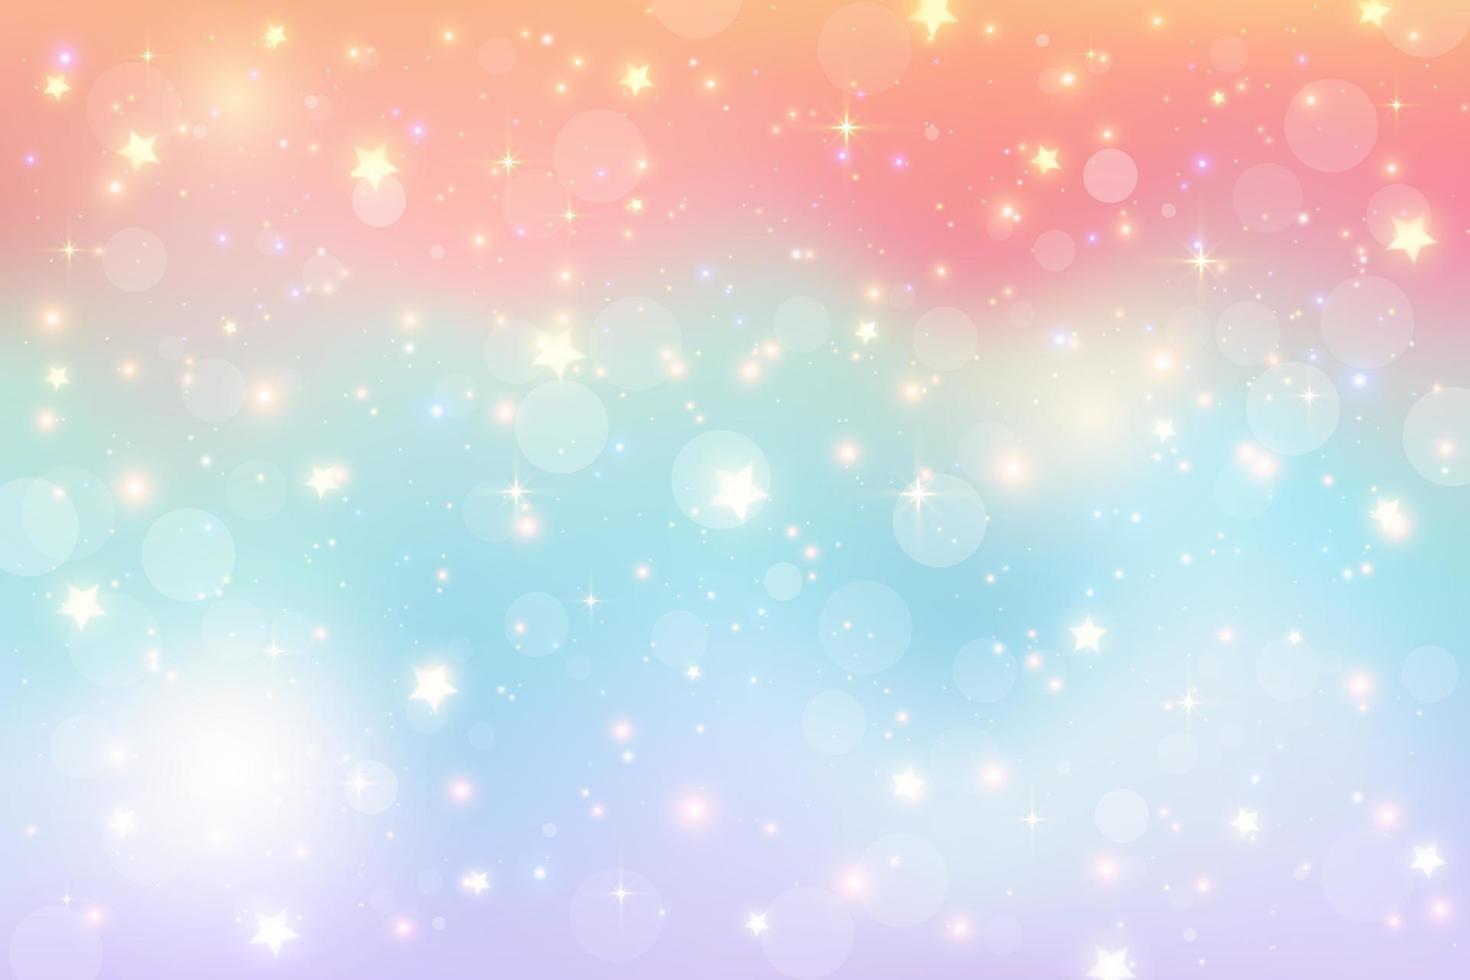 Fantasieaquarellillustration mit Regenbogenpastellhimmel mit Sternen. abstrakter einhorn kosmischer hintergrund. Cartoon Girlie-Vektor-Illustration vektor